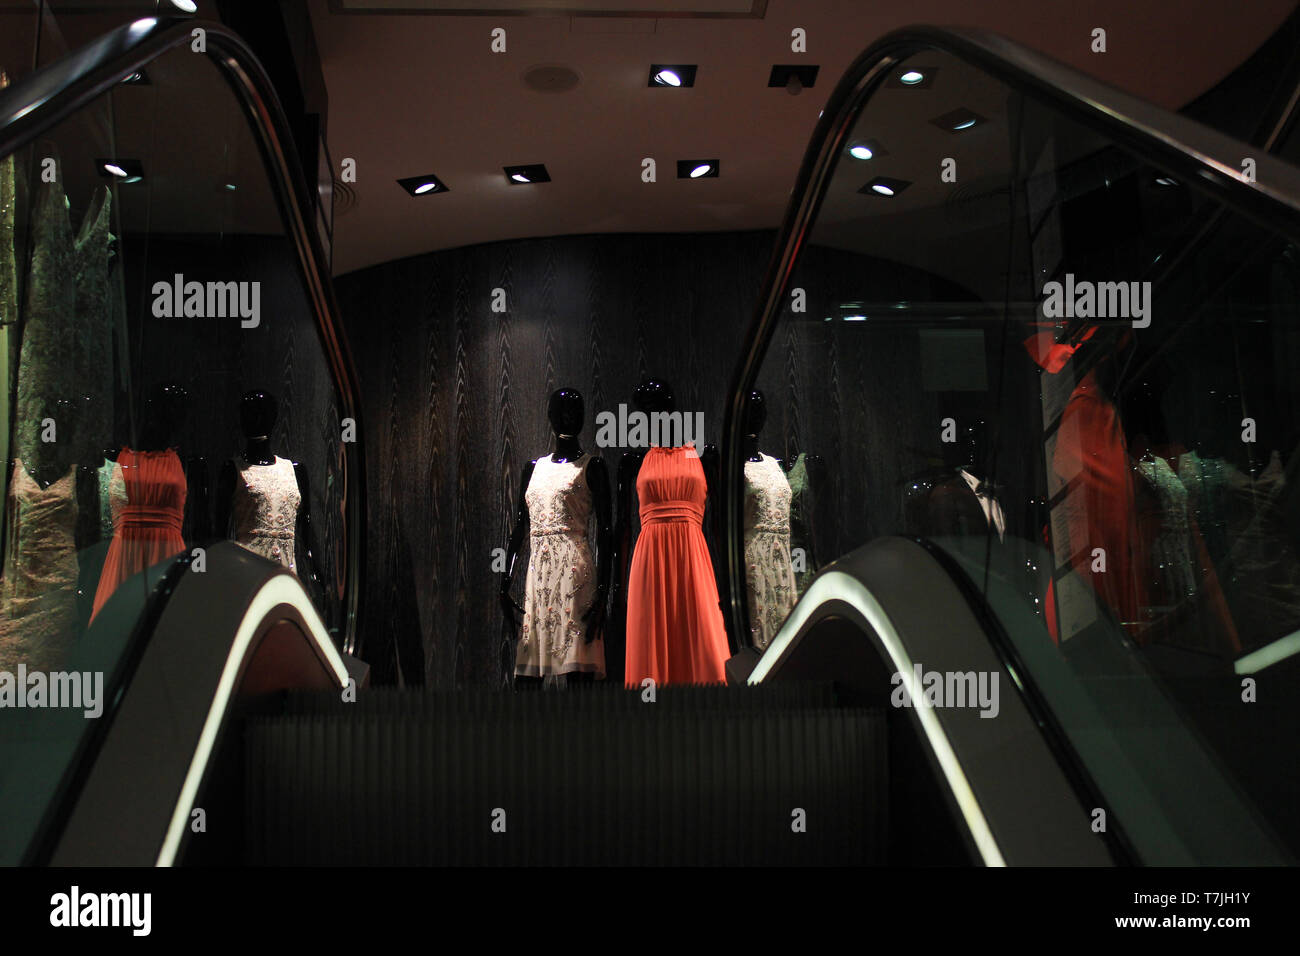 Die luxuriösen Einkaufsmöglichkeiten: Anzeige Dummys in teuren festliche kleider gut am Ende der Rolltreppe. Stockfoto